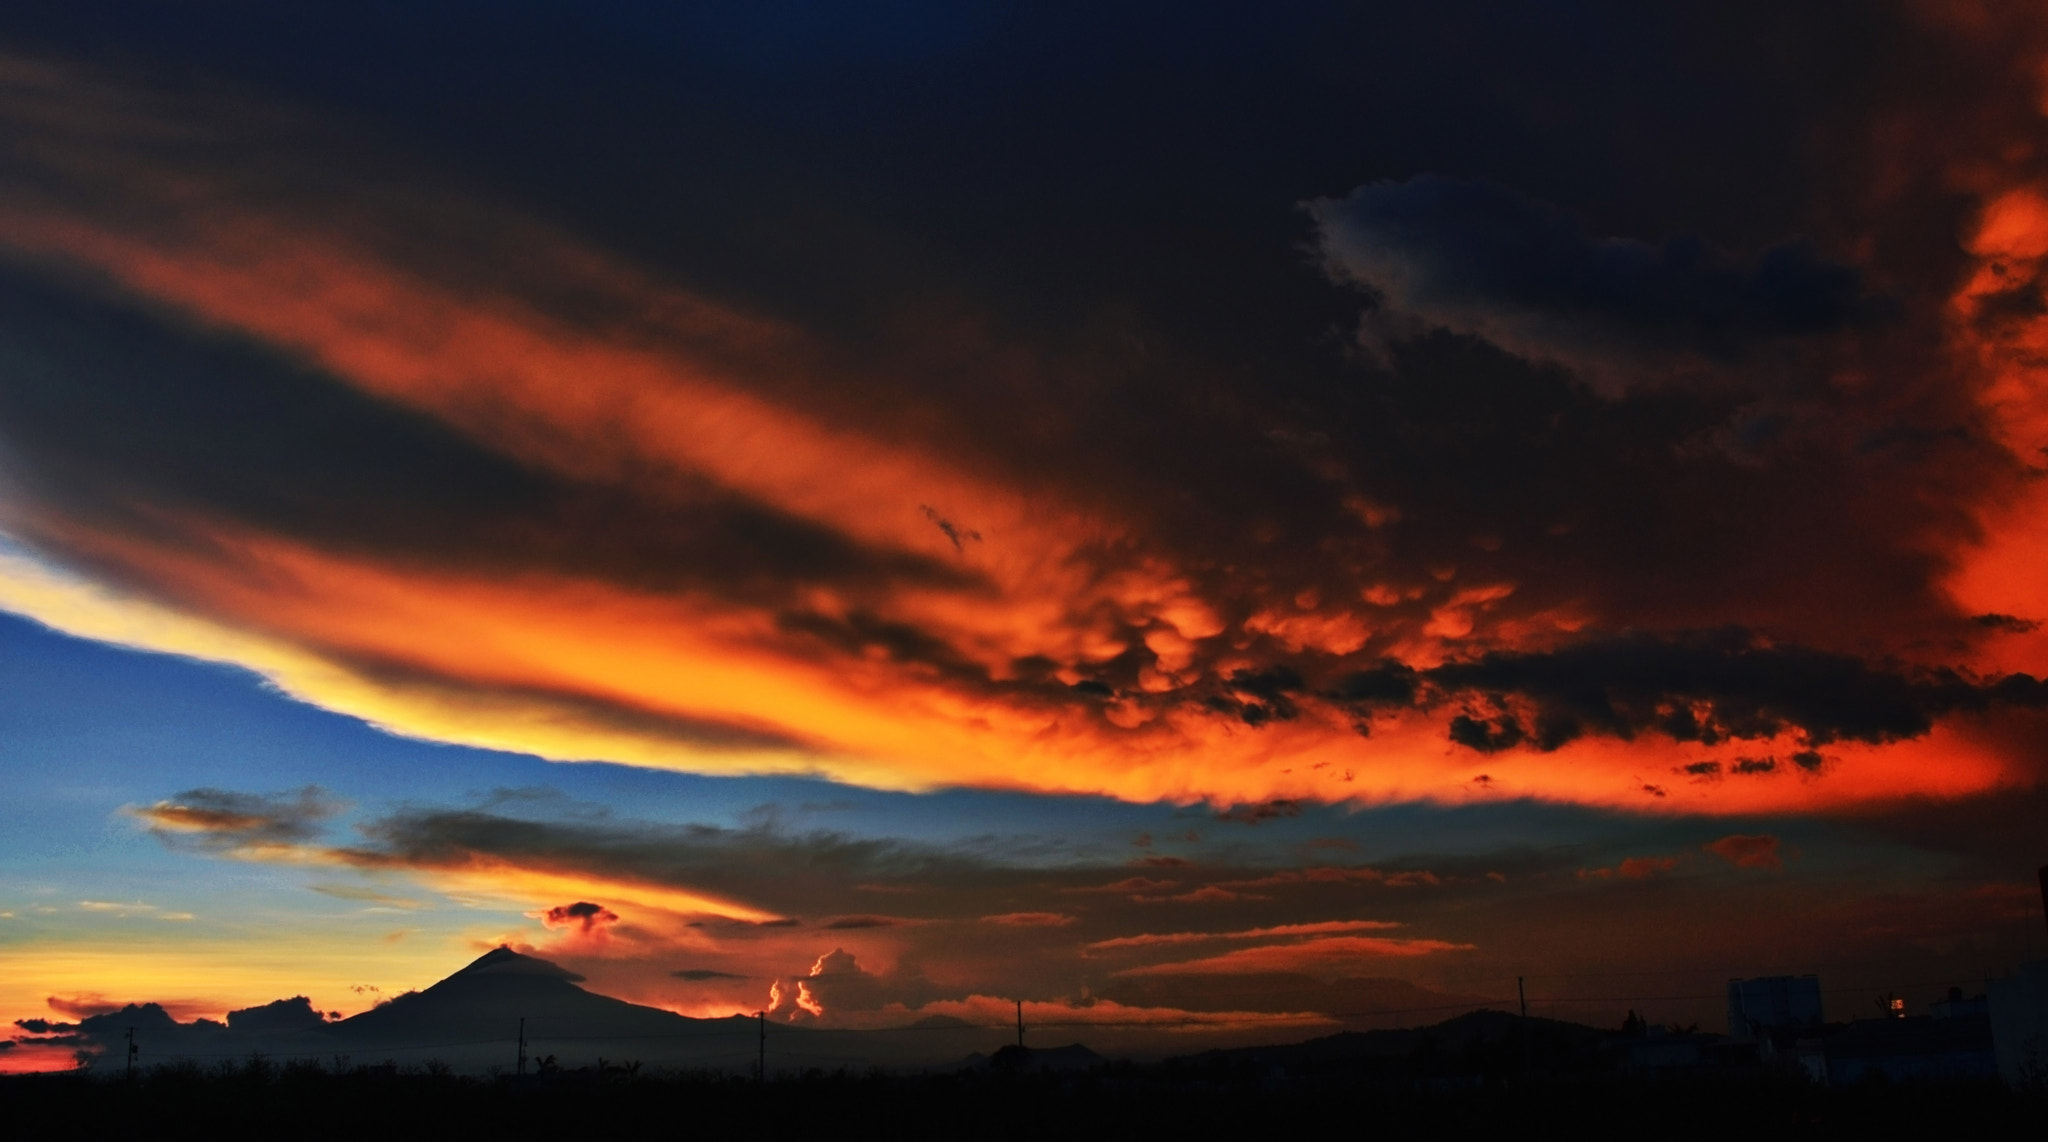 AF Zoom-Nikkor 28-70mm f/3.5-4.5D sample photo. Sunset popocatepetl and clouds photography